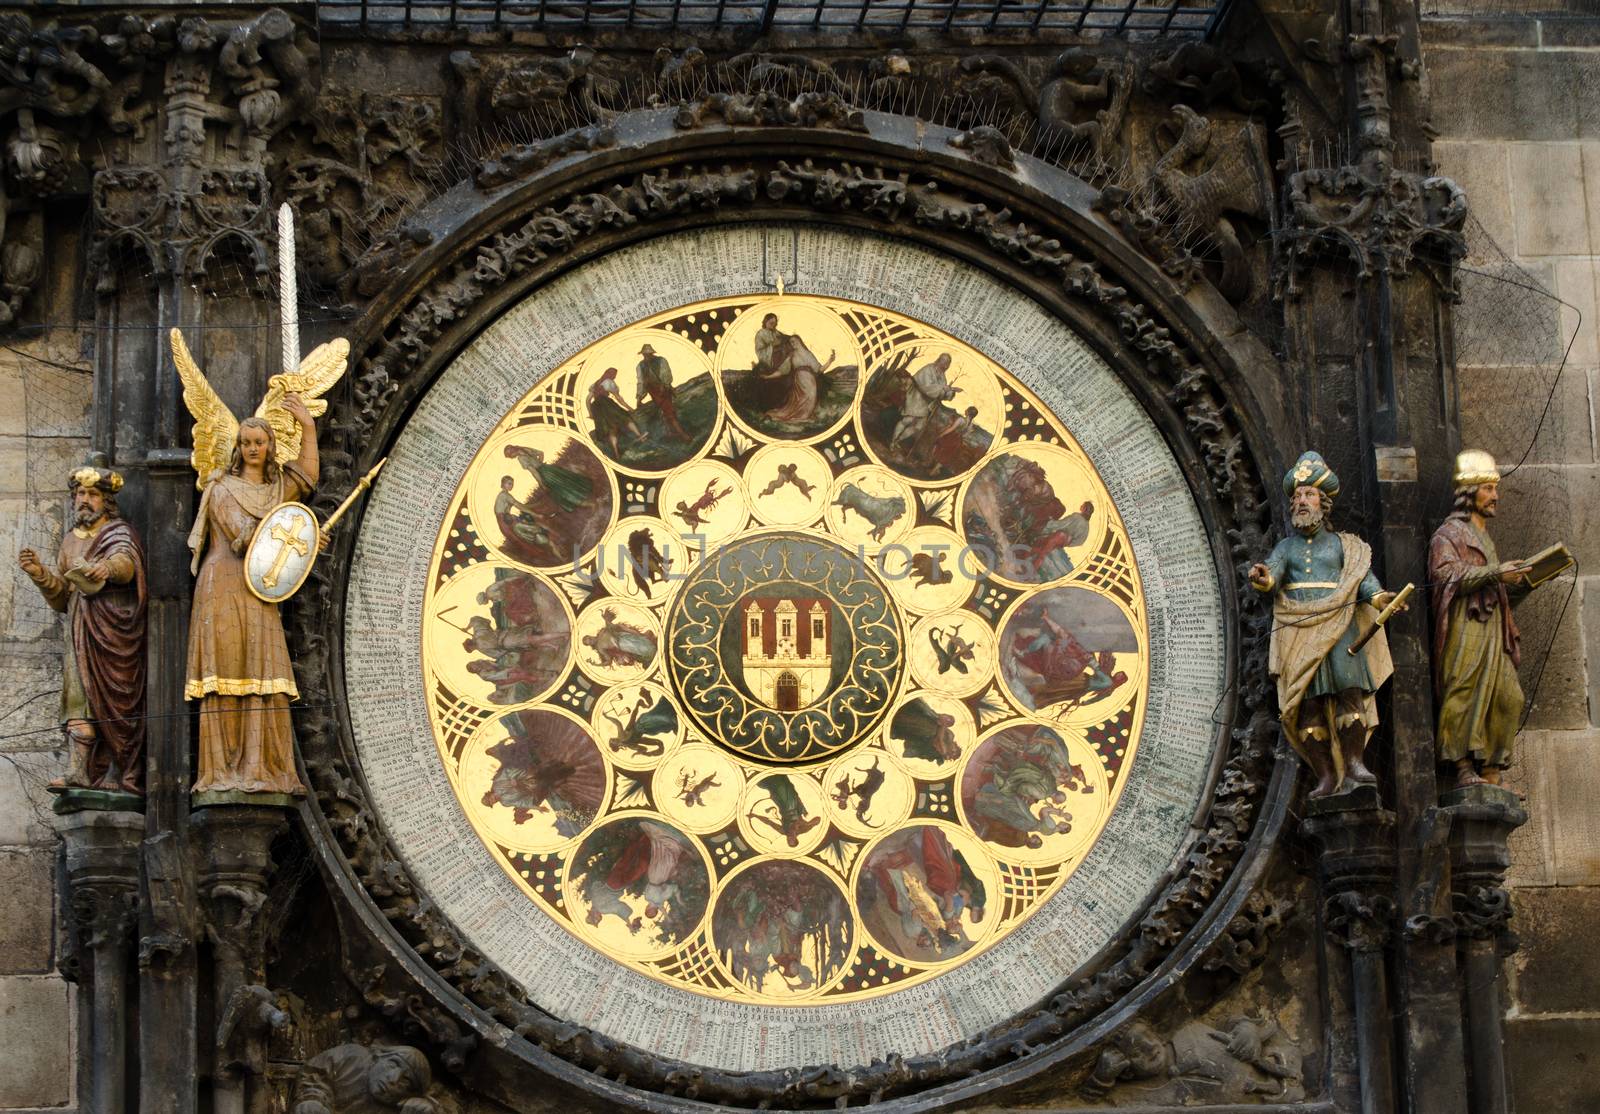 Prague astronomical clock by sarkao